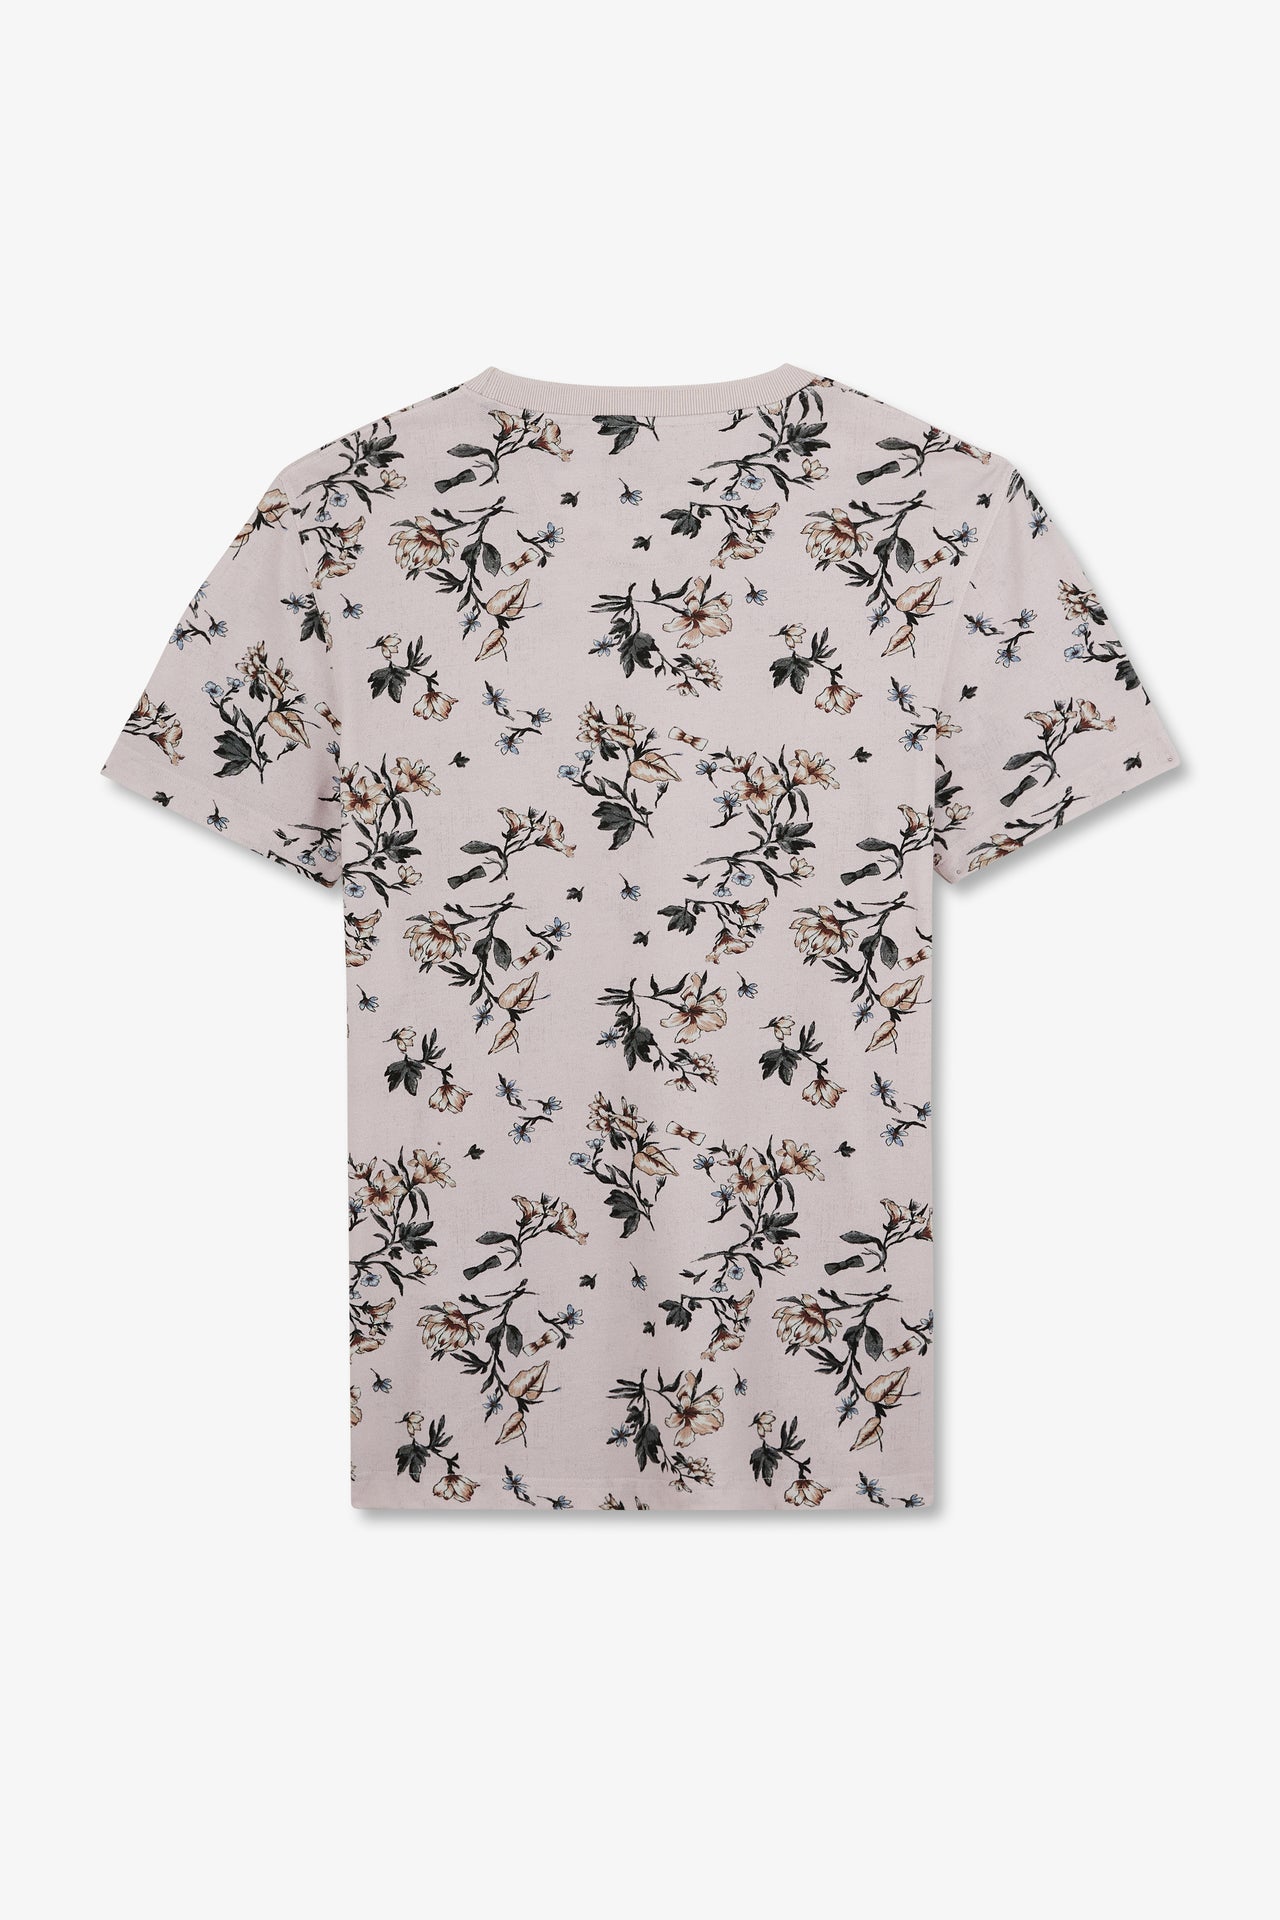 T-shirt manches courtes rose imprimé feuilles